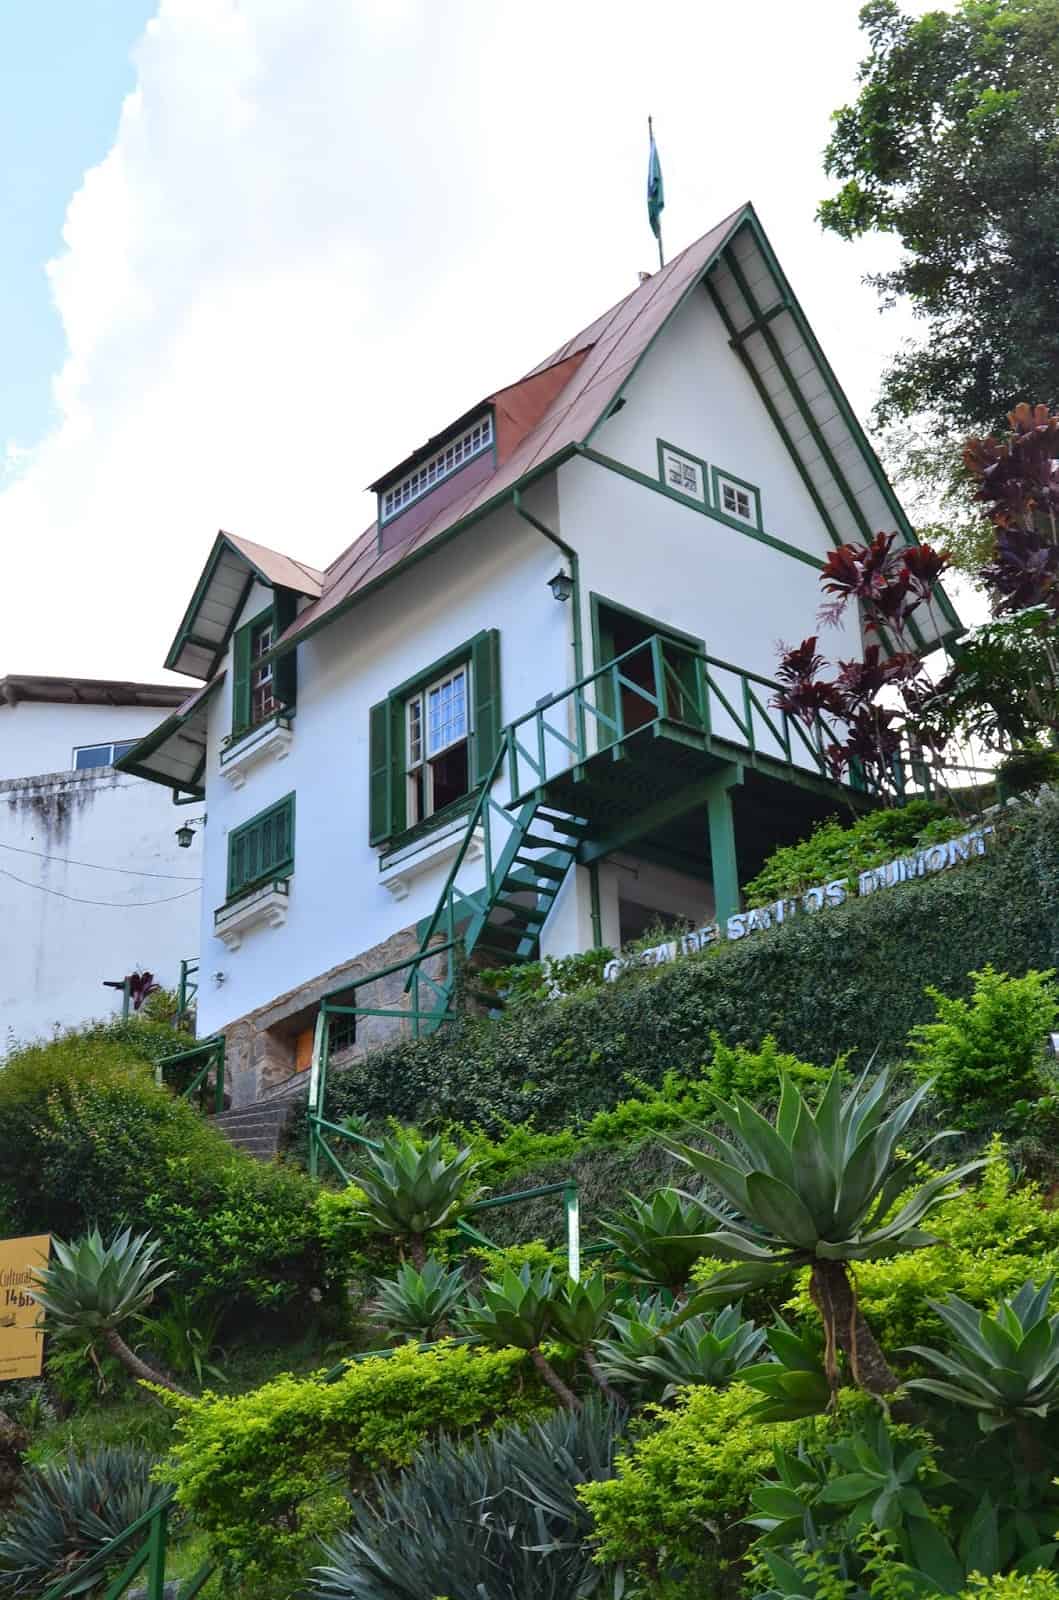 Casa de Santos Dumont in Petrópolis, Brazil